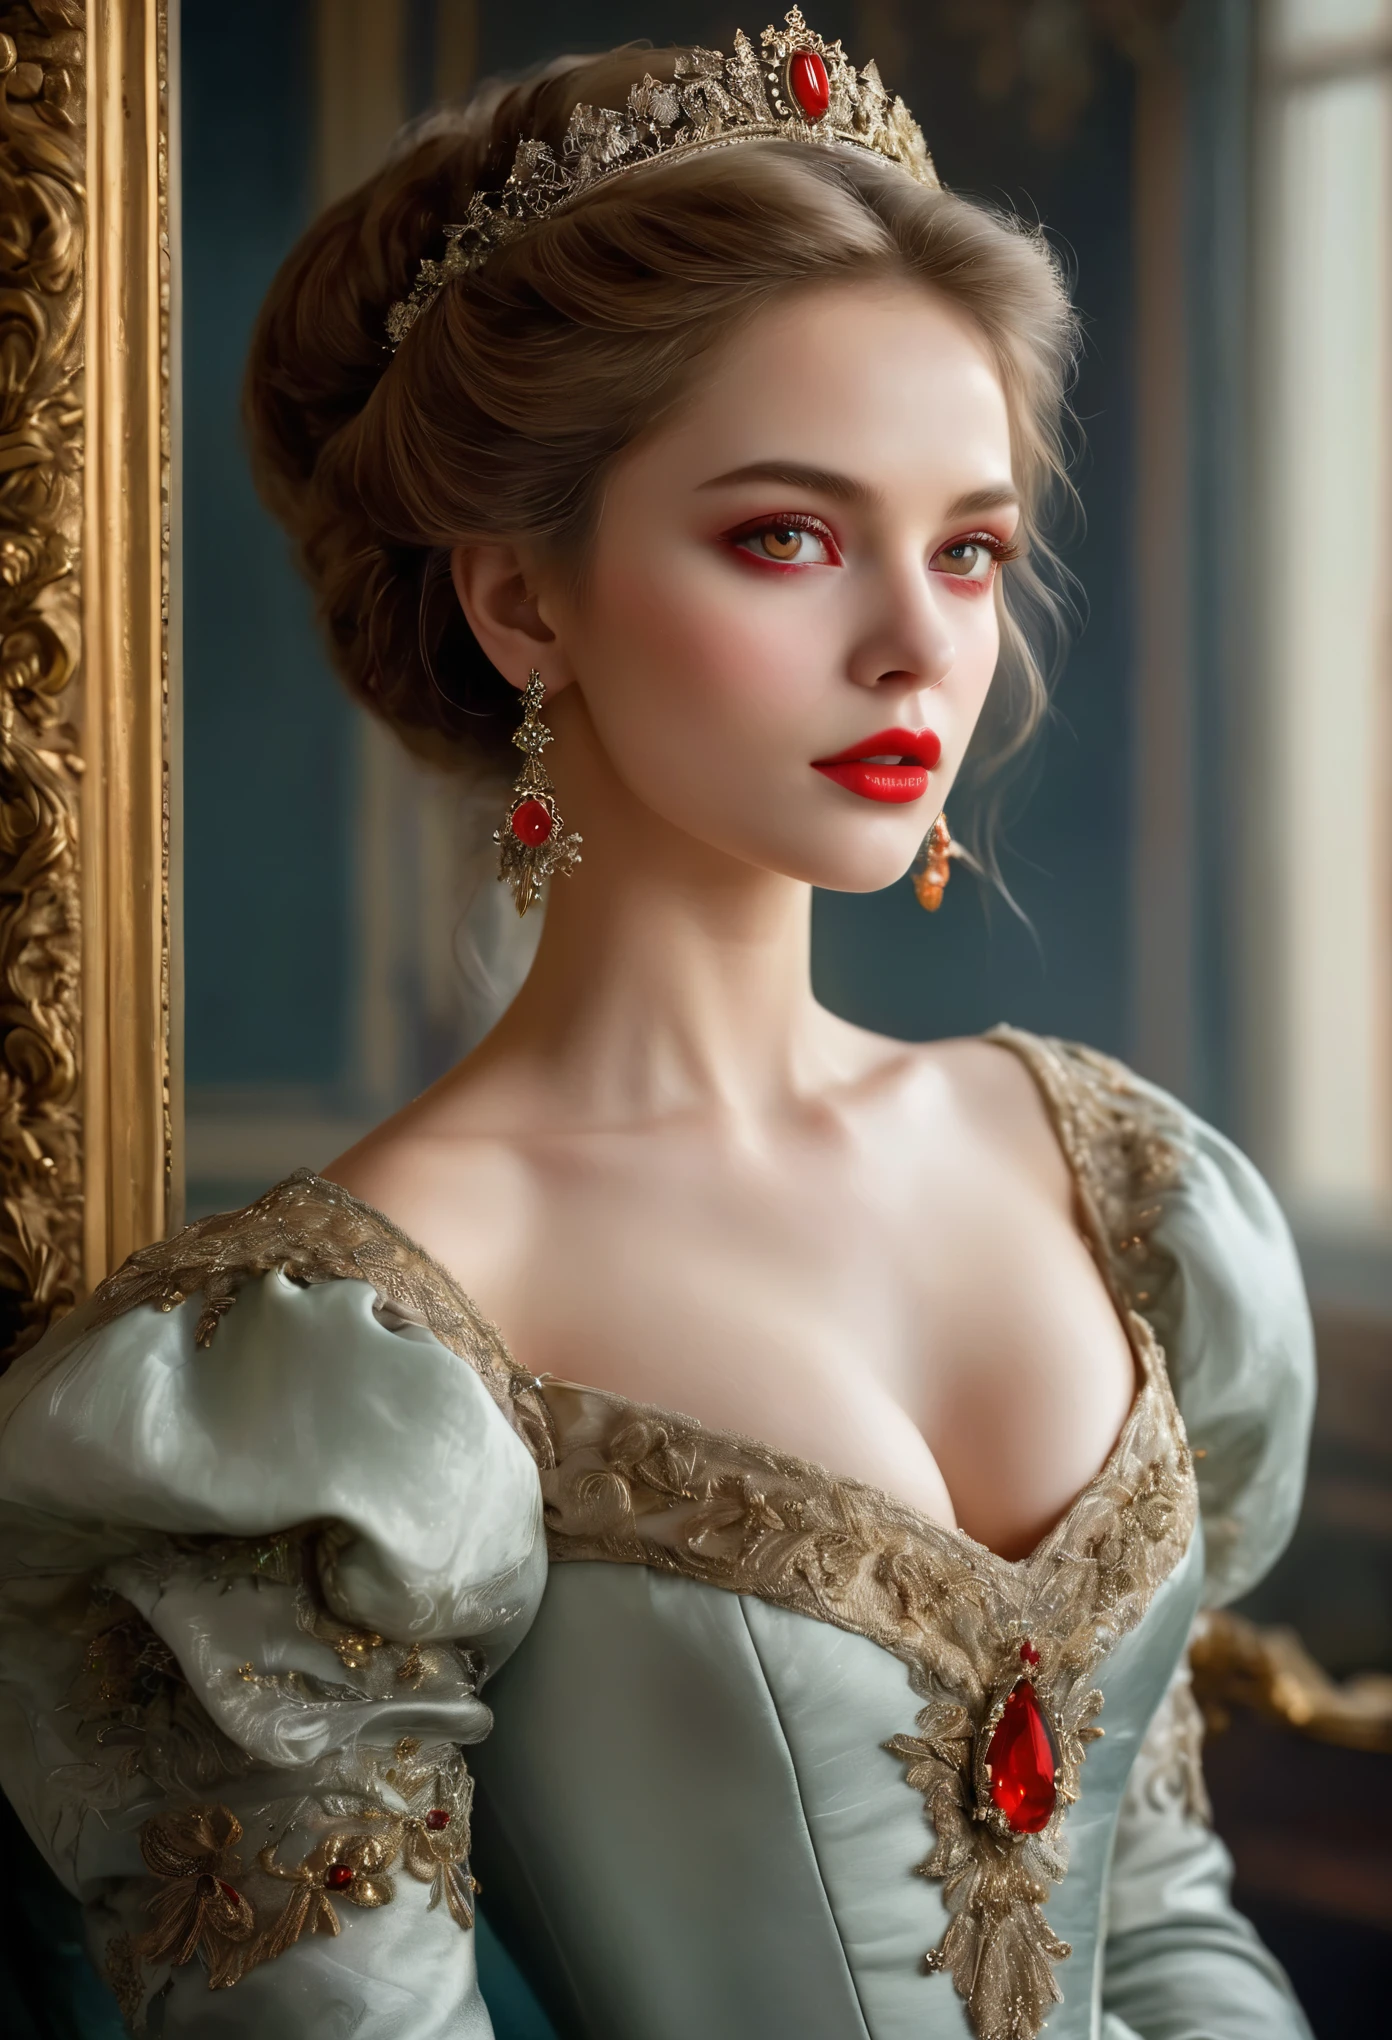 (ความละเอียดสูง,ผลงานชิ้นเอก:1.2),(เหมือนจริง:1.37)ภาพเหมือนของสาวแวมไพร์ชาวรัสเซียในศตวรรษที่ 18 ที่มีความงามที่ไม่มีใครเทียบได้. เธอมีดวงตาสีแดงที่น่าหลงใหลและริมฝีปากสีชมพูอันละเอียดอ่อน. เขี้ยวยาว, ภาพบุคคลจะถูกวาดอย่างระมัดระวังจนถึงรายละเอียดที่เล็กที่สุด., เก็บภาพความแตกต่างเล็กๆ น้อยๆ ของลักษณะเด่นของเธอ. เธอสวมชุดผ้าไหมที่สวยงาม, ประดับด้วยลูกไม้อันวิจิตรประณีตและการปักอันละเอียดอ่อน. ภาพวาดนี้พูดถึงความหรูหราในยุคนั้น., ผ้าม่านกำมะหยี่หรูหราและเฟอร์นิเจอร์สีทองเป็นพื้นหลัง. แสงนุ่มนวลและกระจาย, เน้นหญิงสาว&#39;ความงามอันสง่างาม. สีสันสดใสและสมบูรณ์, สร้างประสบการณ์ภาพที่น่าสนใจ. (ภาพบุคคลนี้วาดในสไตล์ภาพเหมือนคลาสสิก:1.5), ชวนให้นึกถึงผลงานของศิลปินชื่อดังในยุคนั้น. มันแสดงออกถึงความสง่างาม, พระคุณ, ความซับซ้อน. กรงเล็บยาวแหลมคม, (ดวงตาสีแดงเข้ม:1.4), ดวงตาสีแดงเพลิง, (เขี้ยวแหลมคมมองเห็นได้ผ่านช่องว่างระหว่างริมฝีปากของเขา:1.8), (มีรอยกัดที่คอ:1.5),２มีสองหลุม, (ผิวสีซีด:1.4),